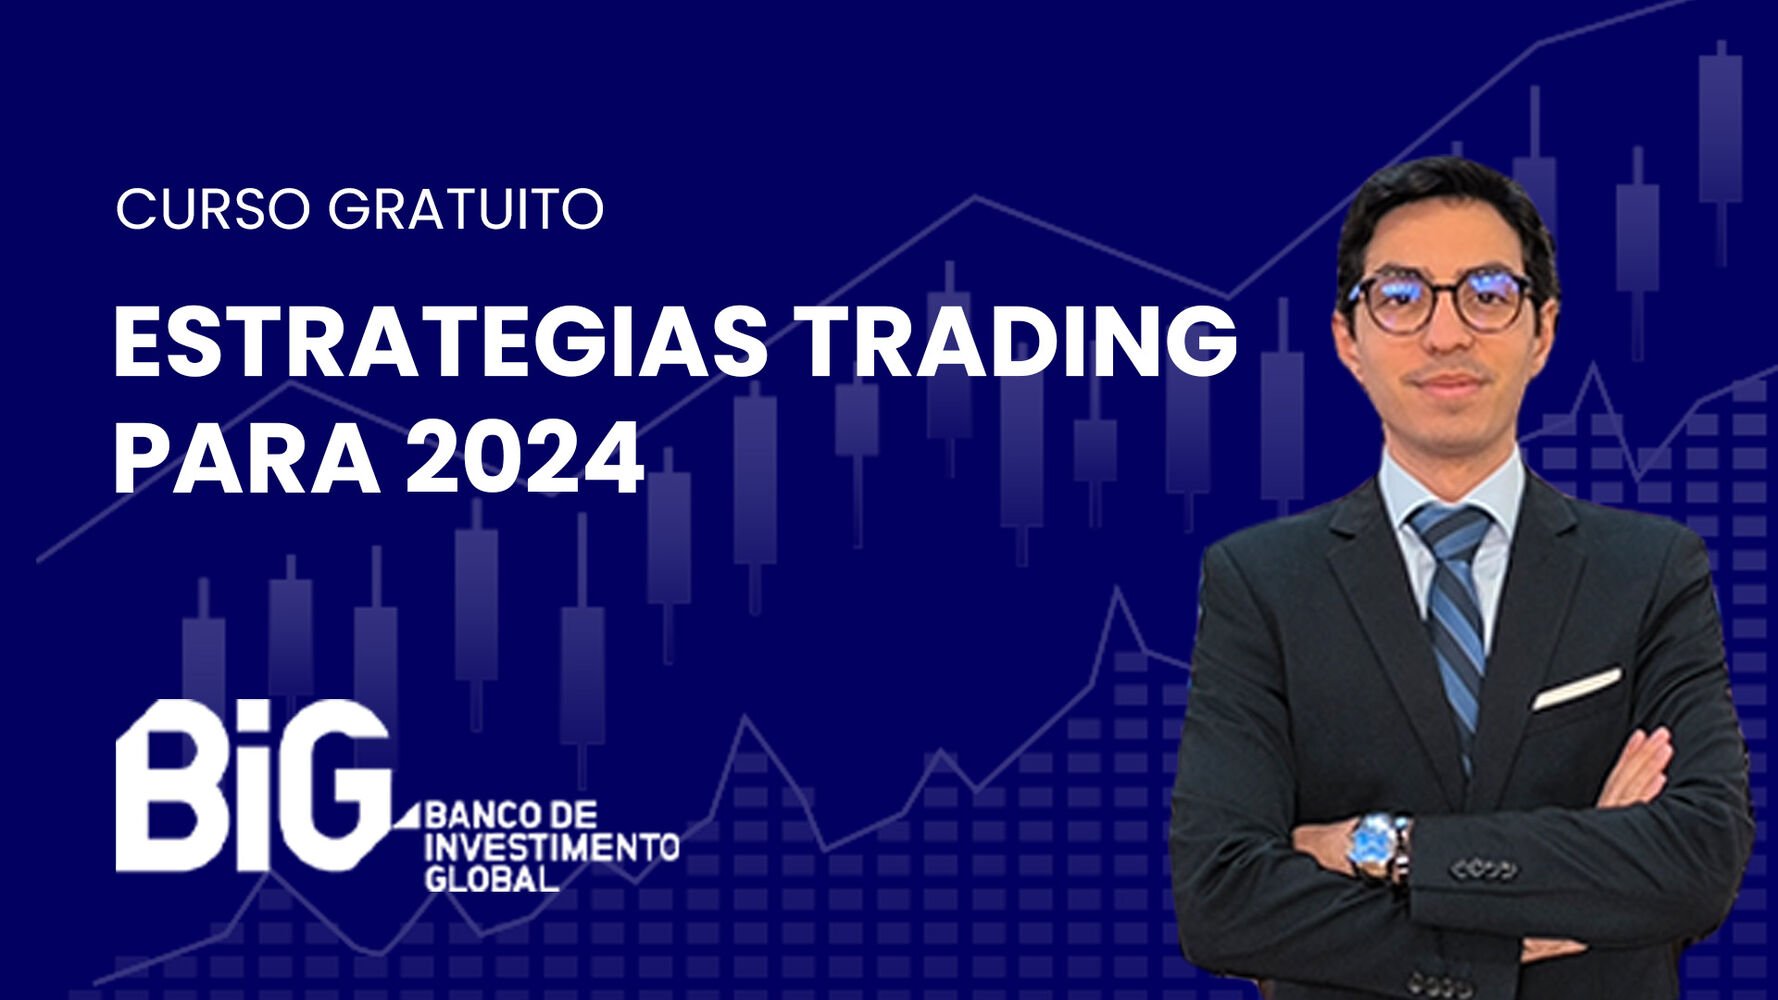 Estrategias trading para 2024